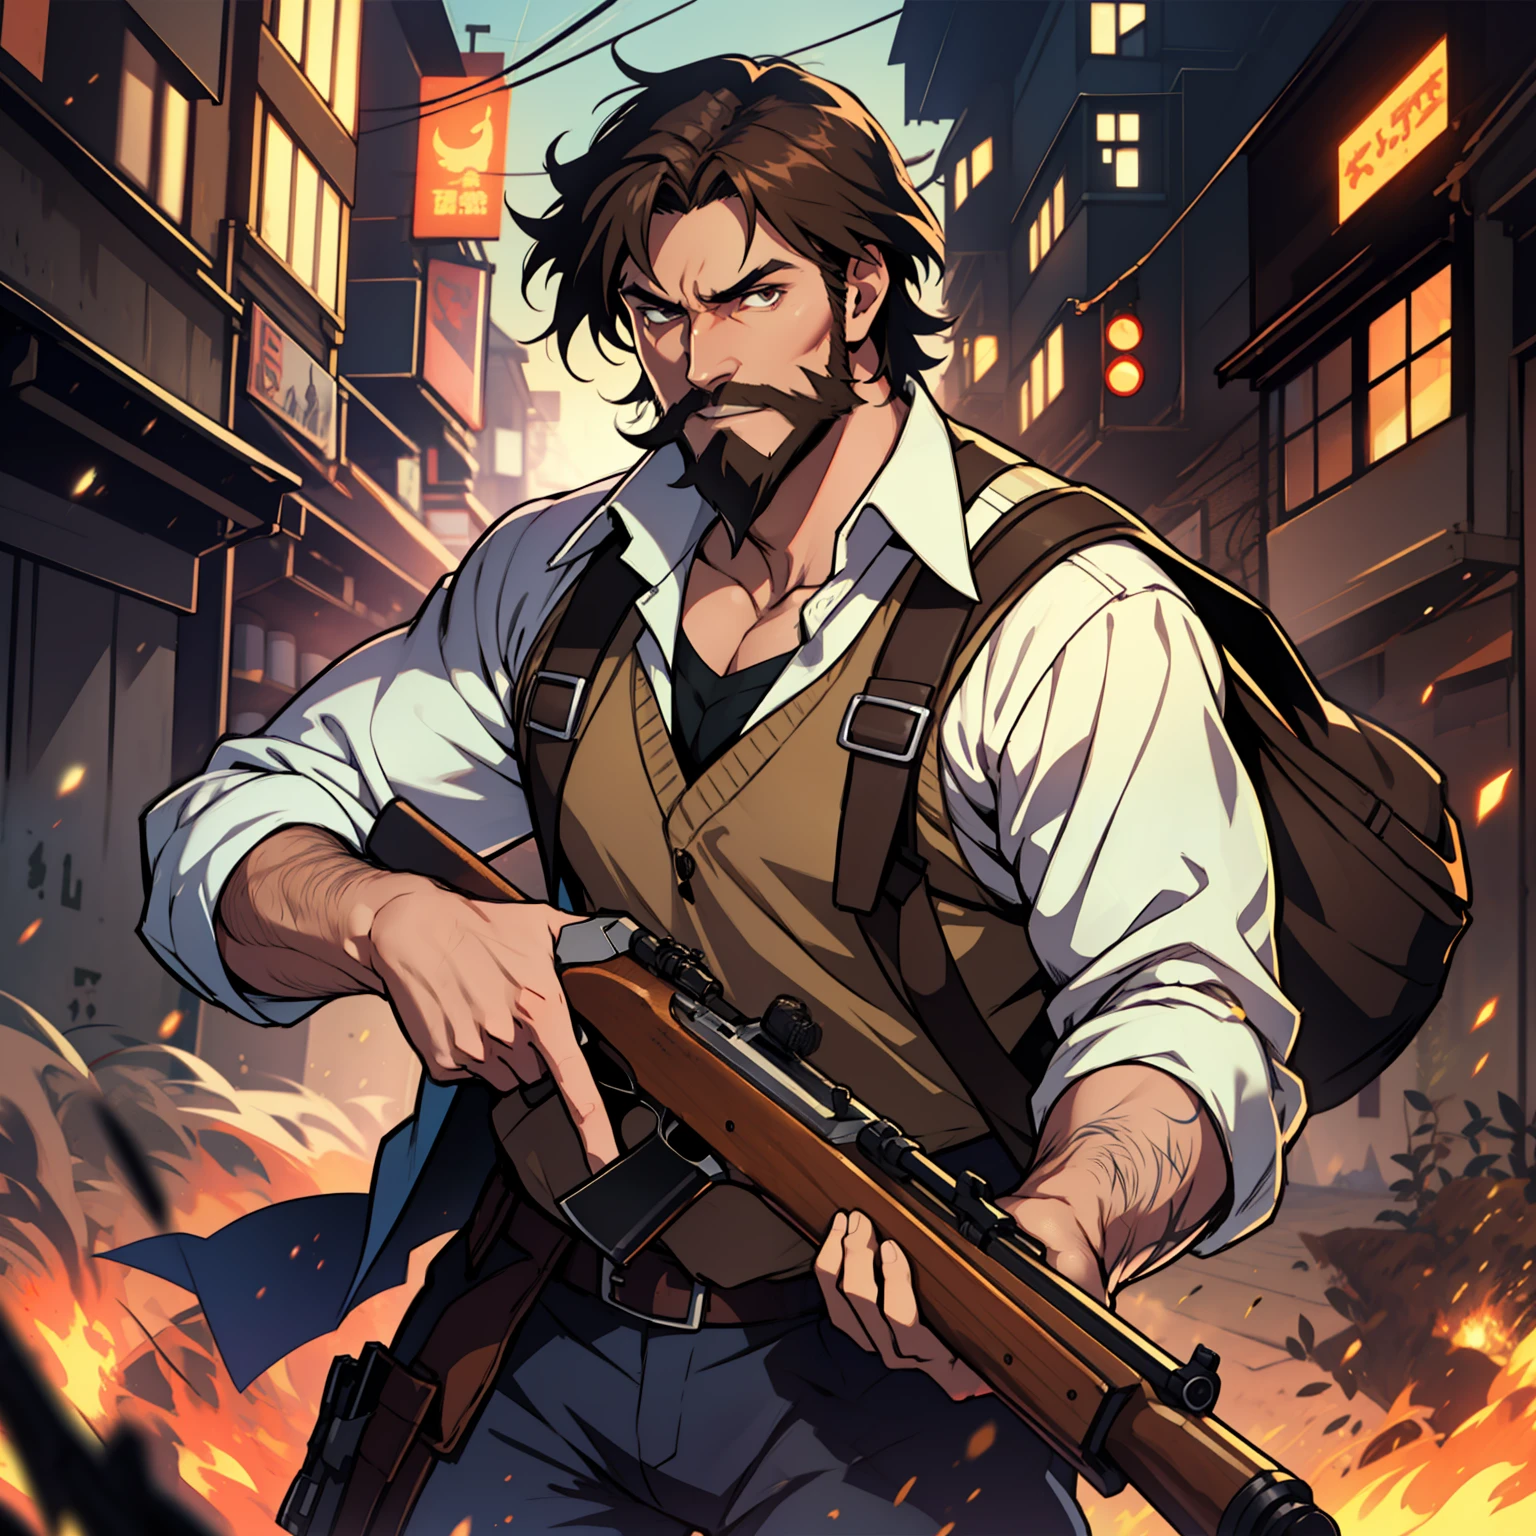 Allein, Anime-Typ mit braunen Haaren und struppigem braunem Bart, der ein Winchester-Gewehr hält, dynamische Beleuchtung